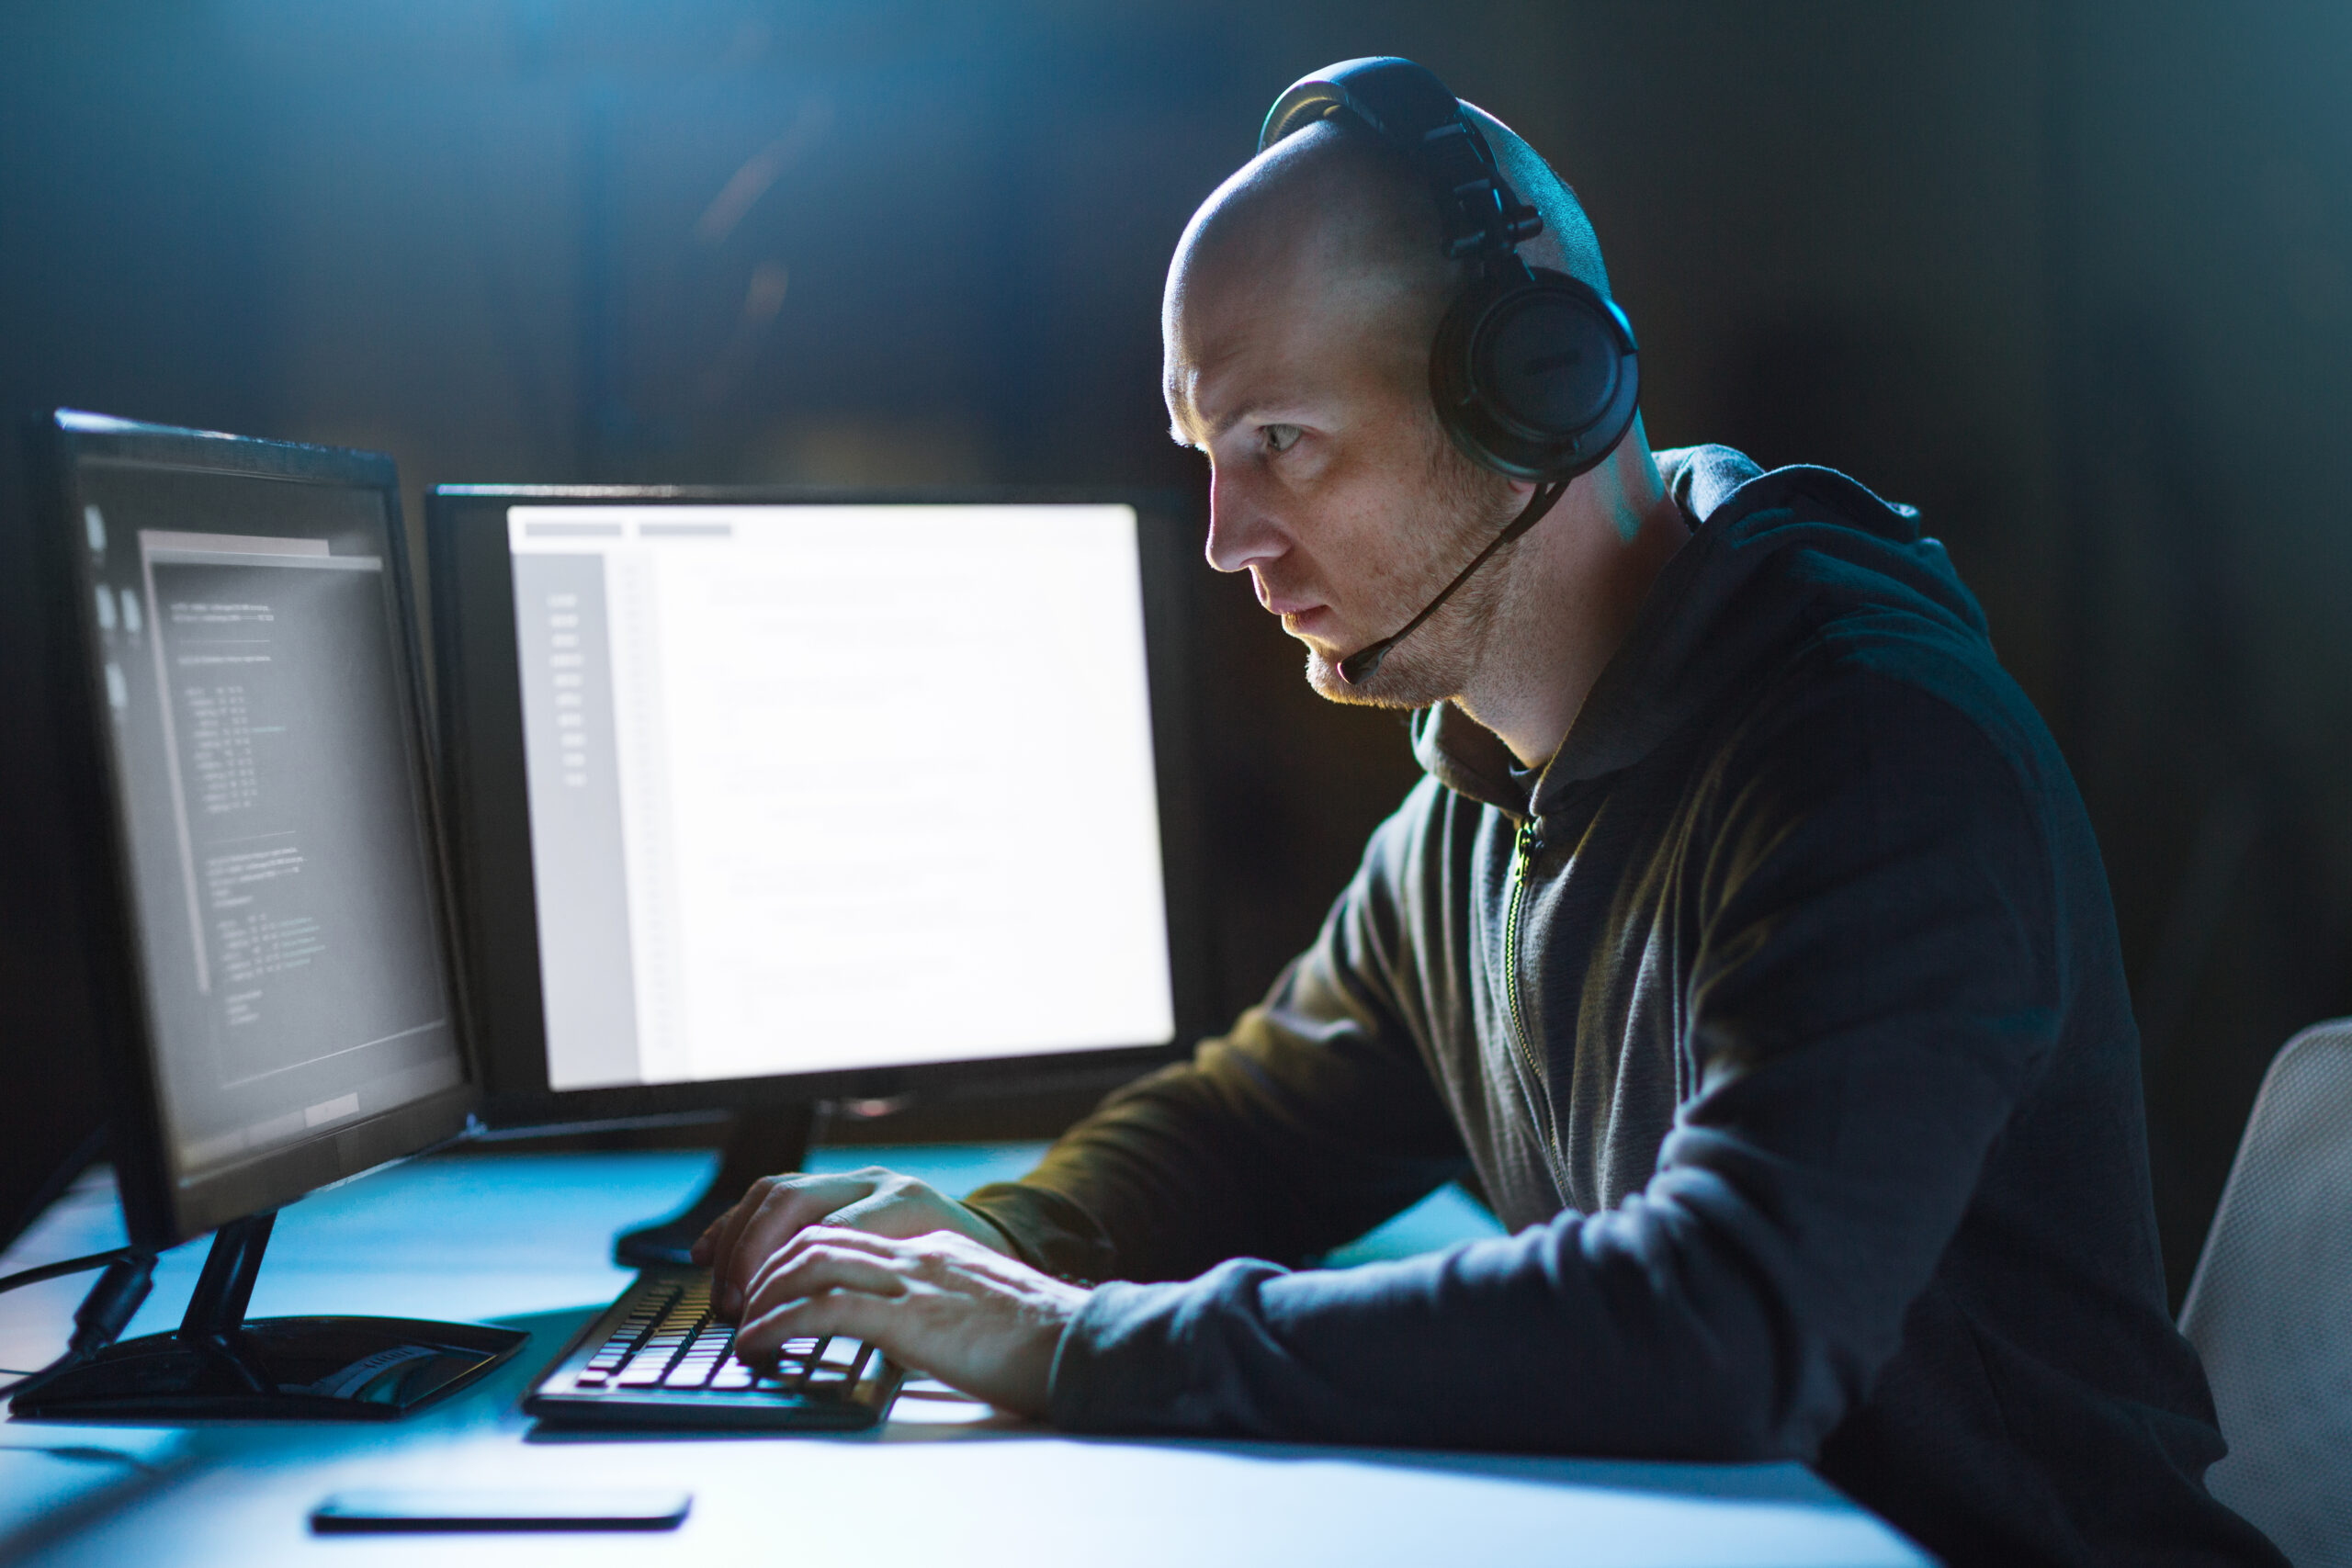 Mężczyzna programista pracuje przy komputerze w ciemnym pomieszczeniu, nosząc słuchawki na uszach. Sprawdza jak wykryć podsłuch na telefonie